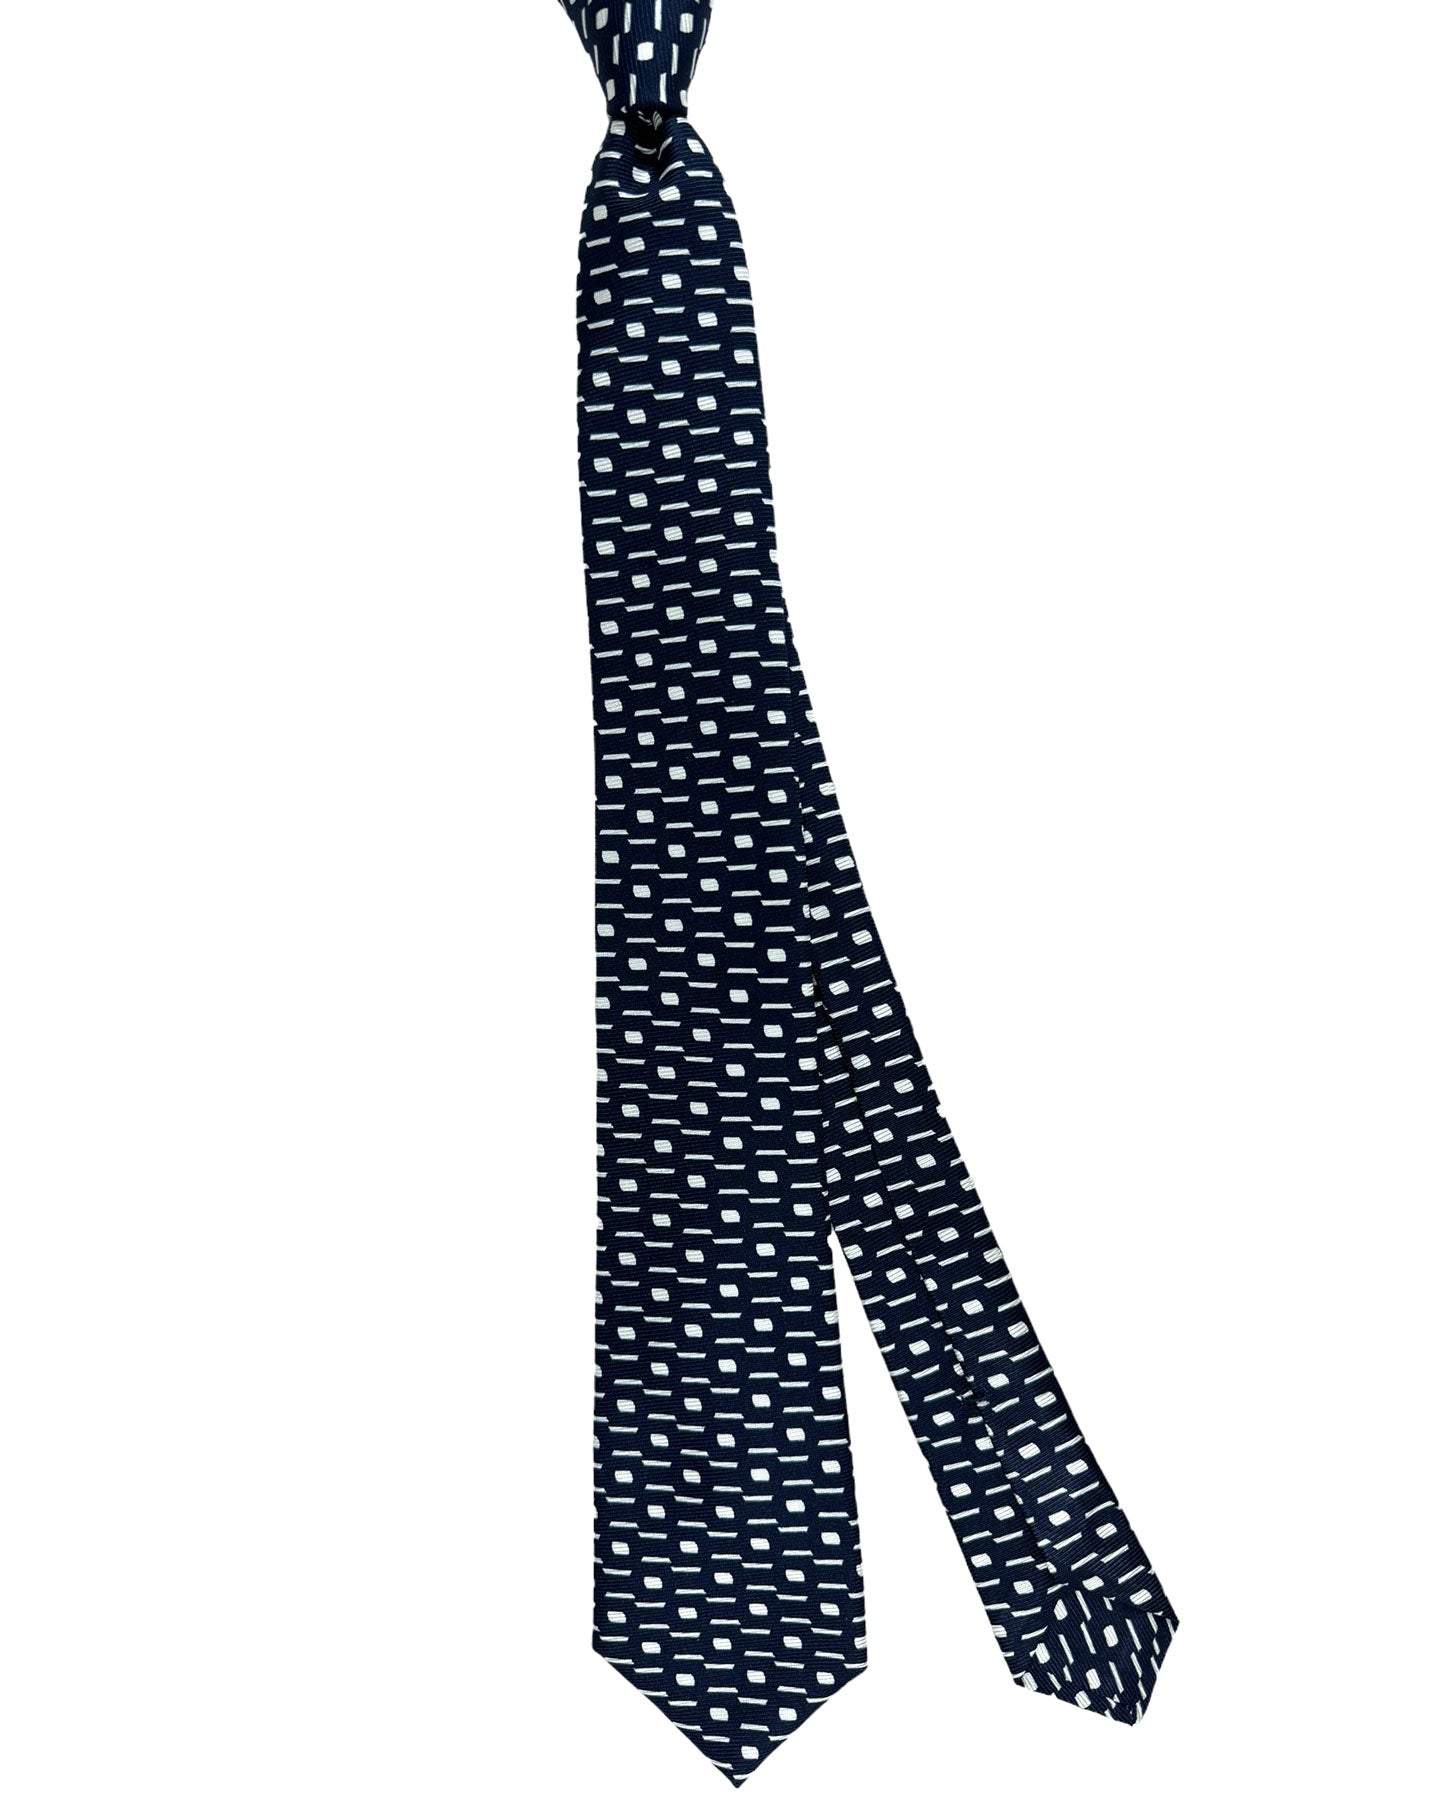 Kiton Tie Dark Blue White Geometric - Sevenfold Necktie